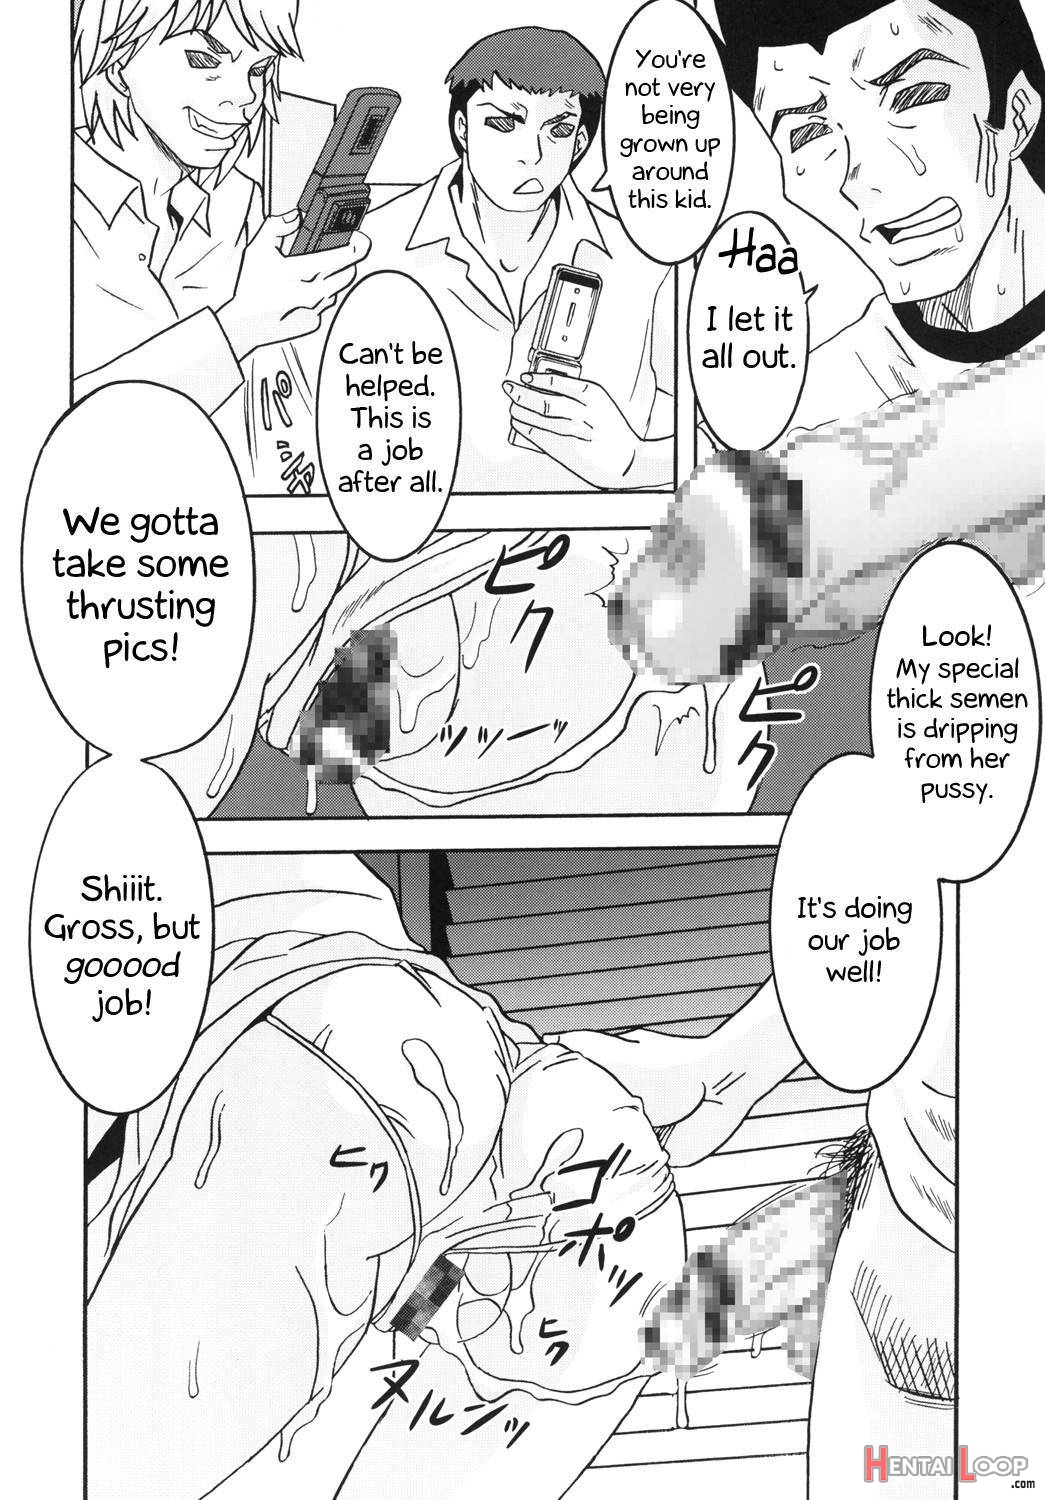 Toaru Otaku no Index #1 page 15